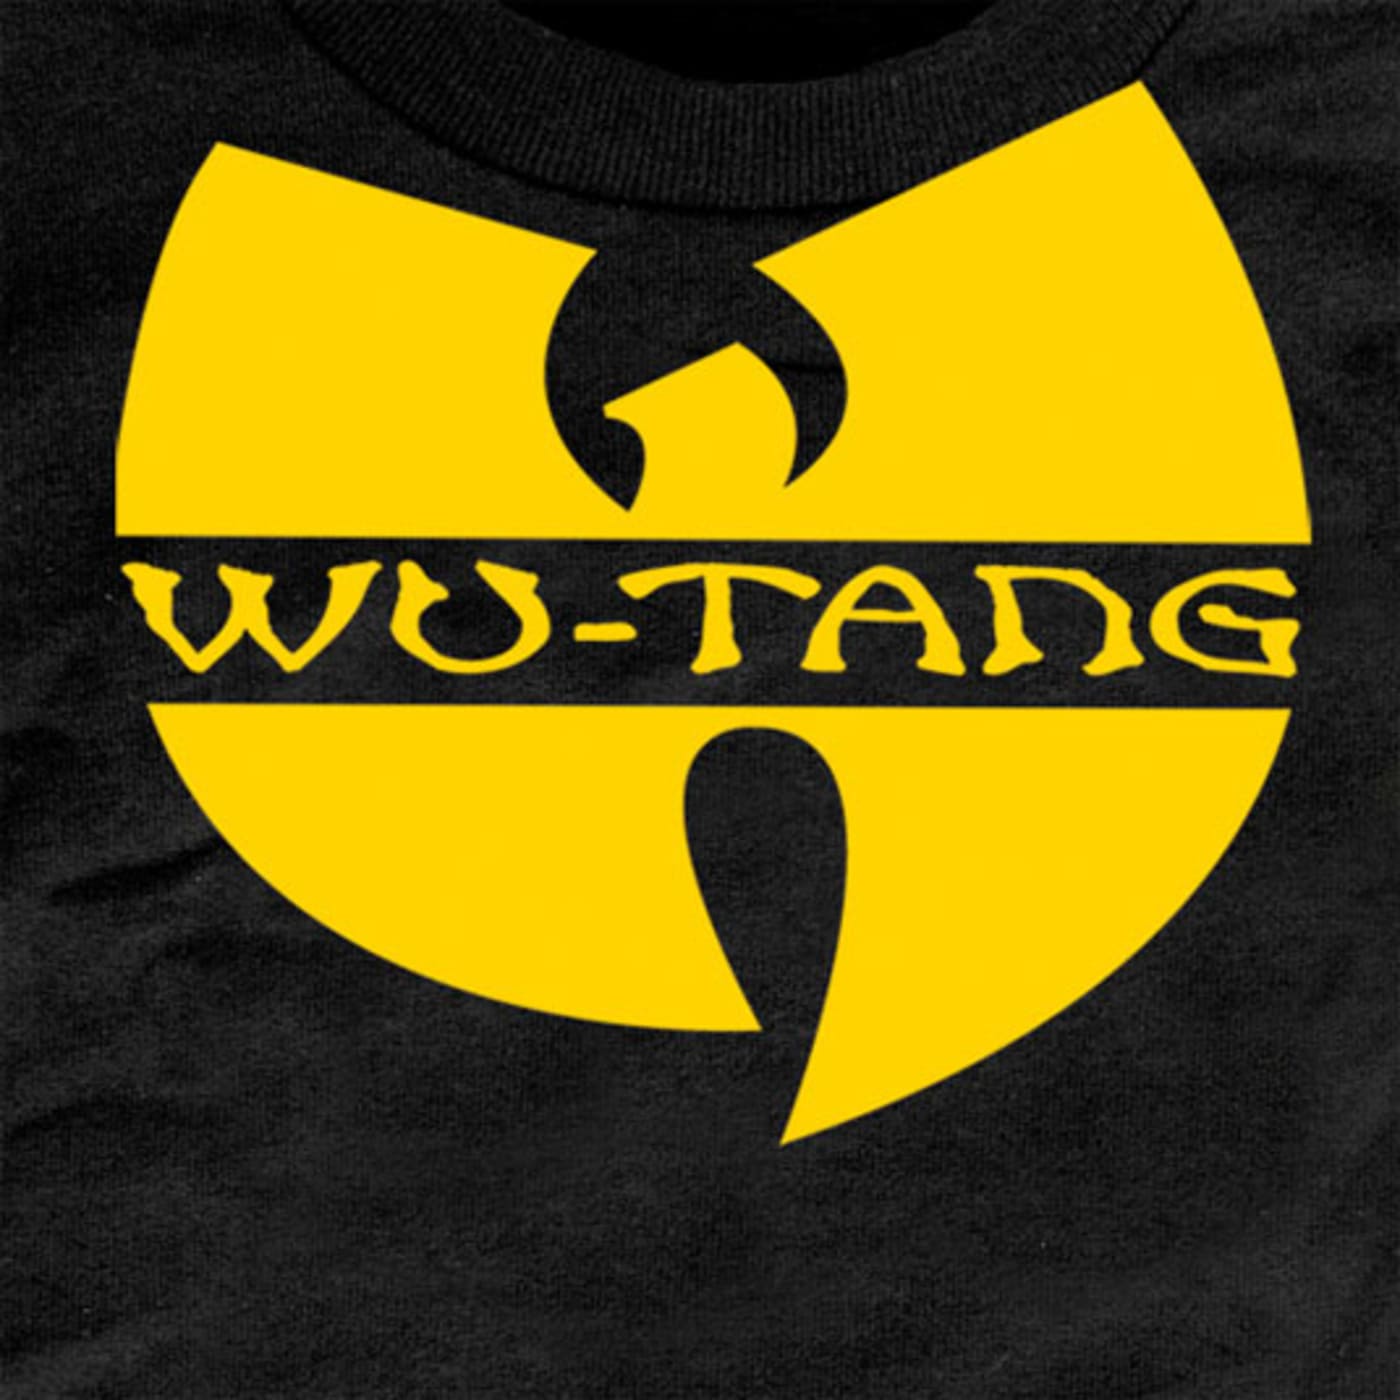 Inzichtelijk schetsen Laatste Wu-Tang Clan: Find The Latest Wu-Tang Clan Stories, News & Features